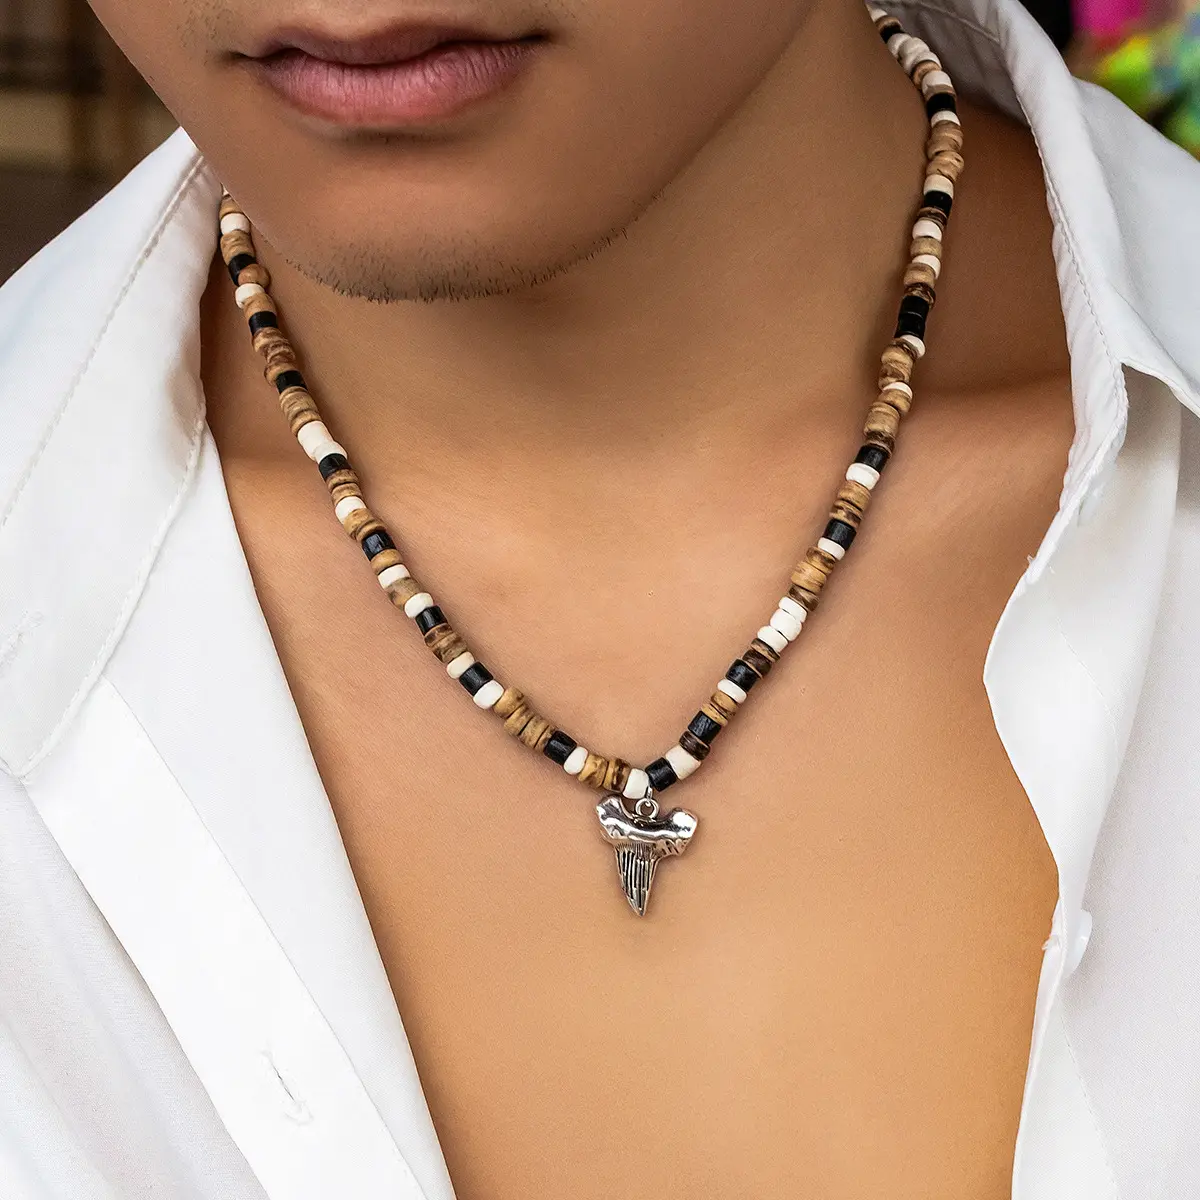 Simple nouvelle personnalité Boho Style hommes collier de perles couleur mélangée perles de bois rétro discothèque Hip Hop mode hommes bijoux